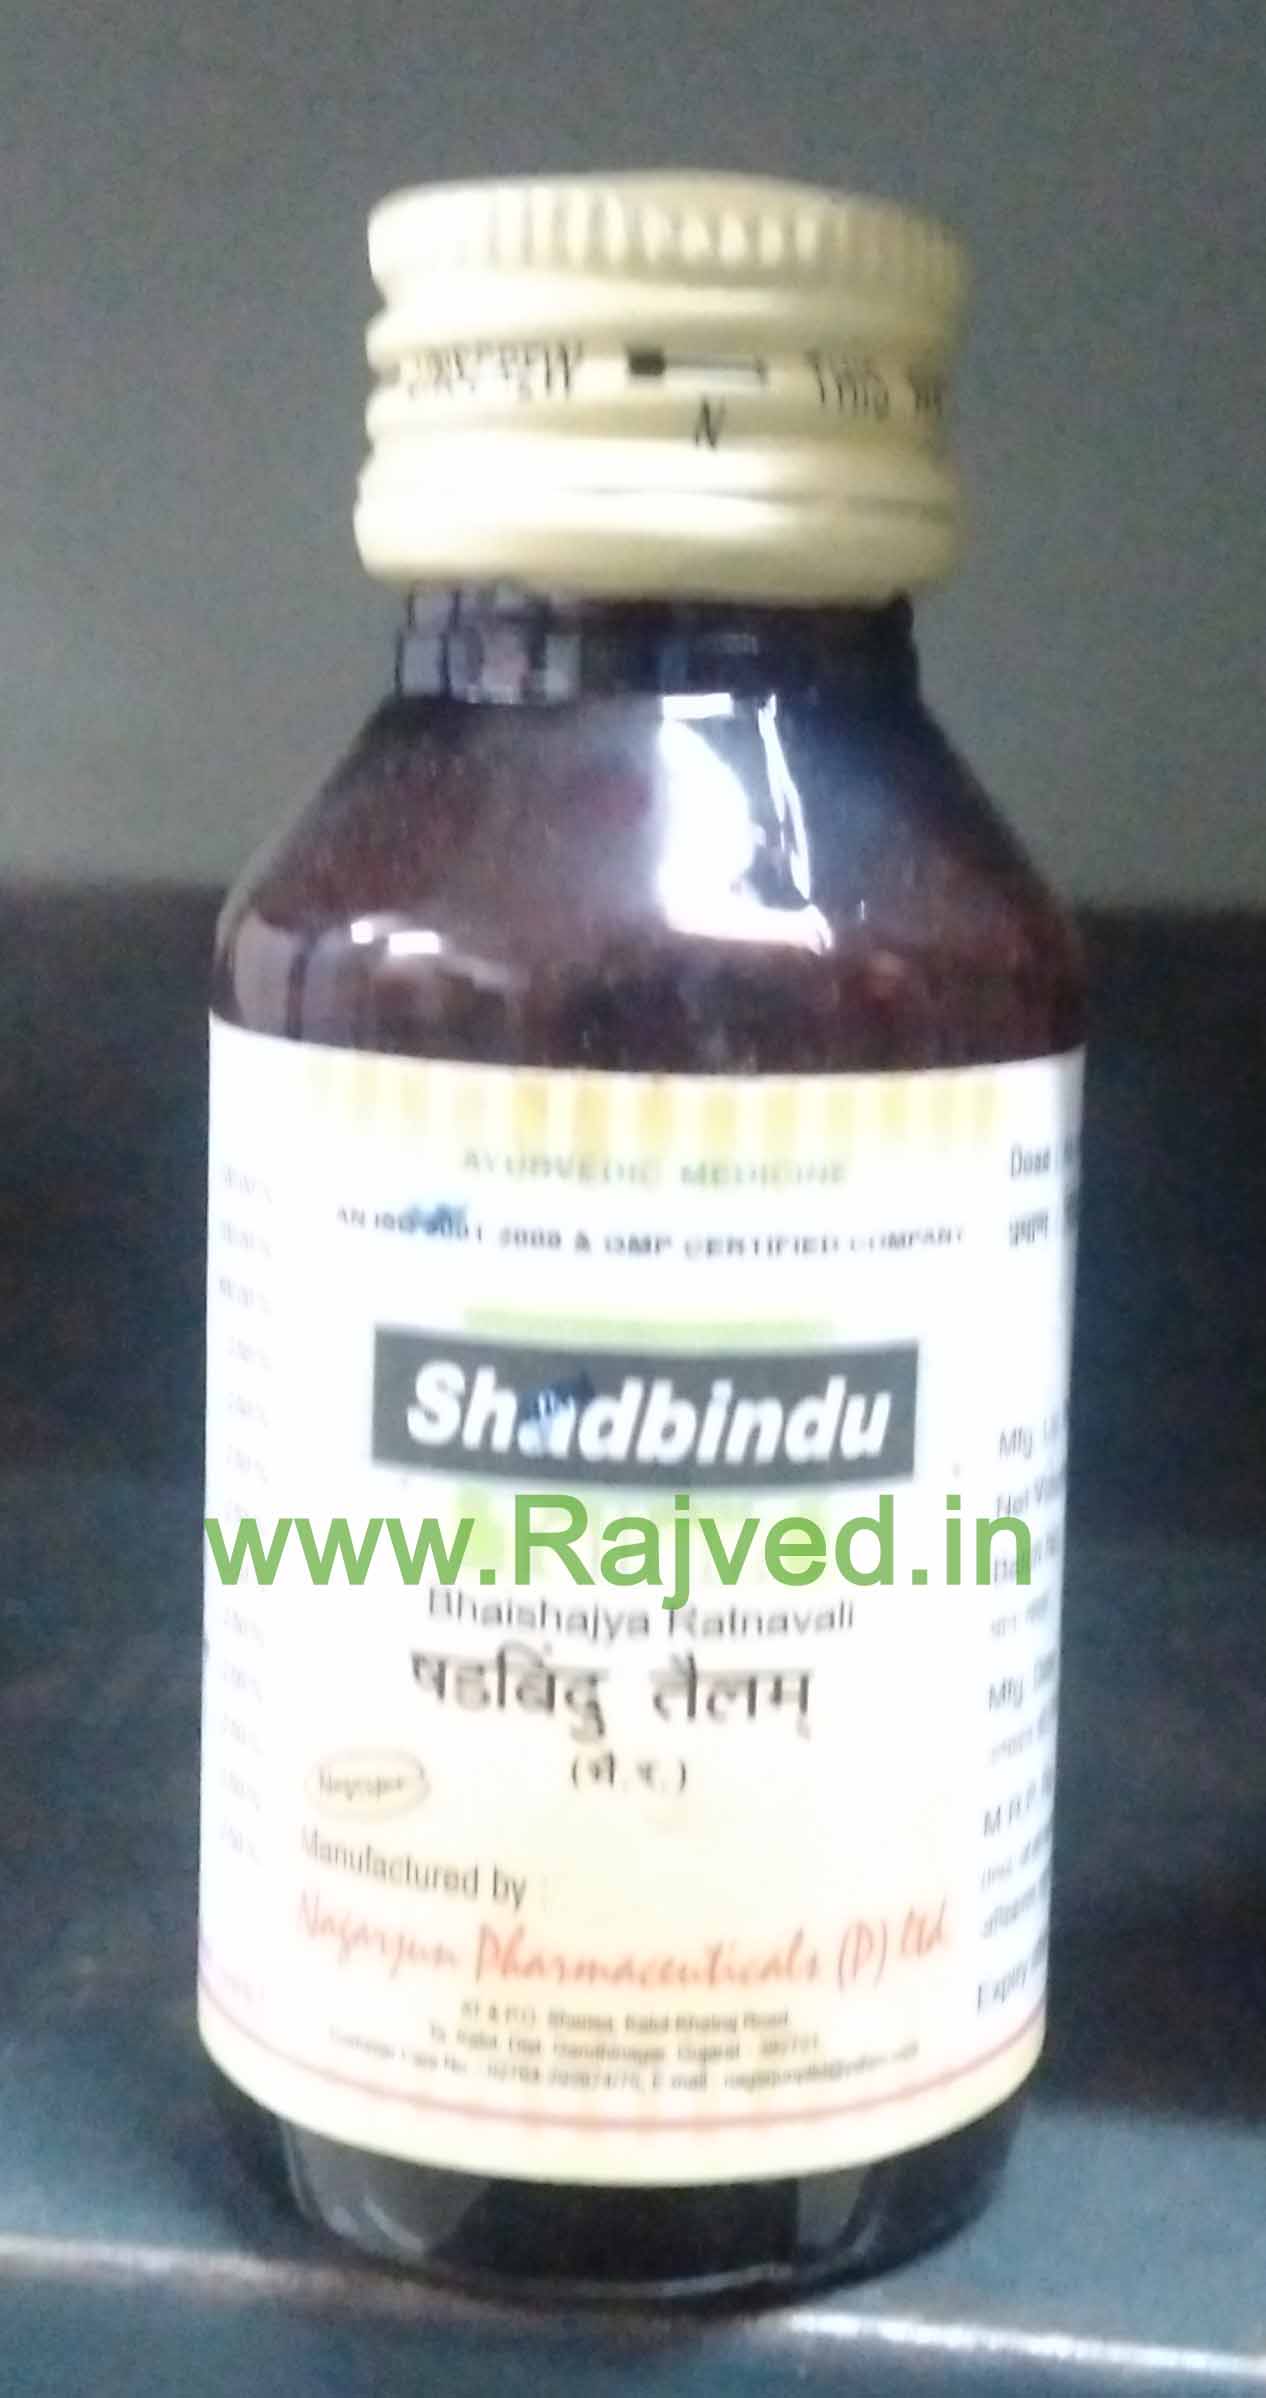 shadbindu tailam 1000 ml upto 20% off nagarjun pharma gujarat